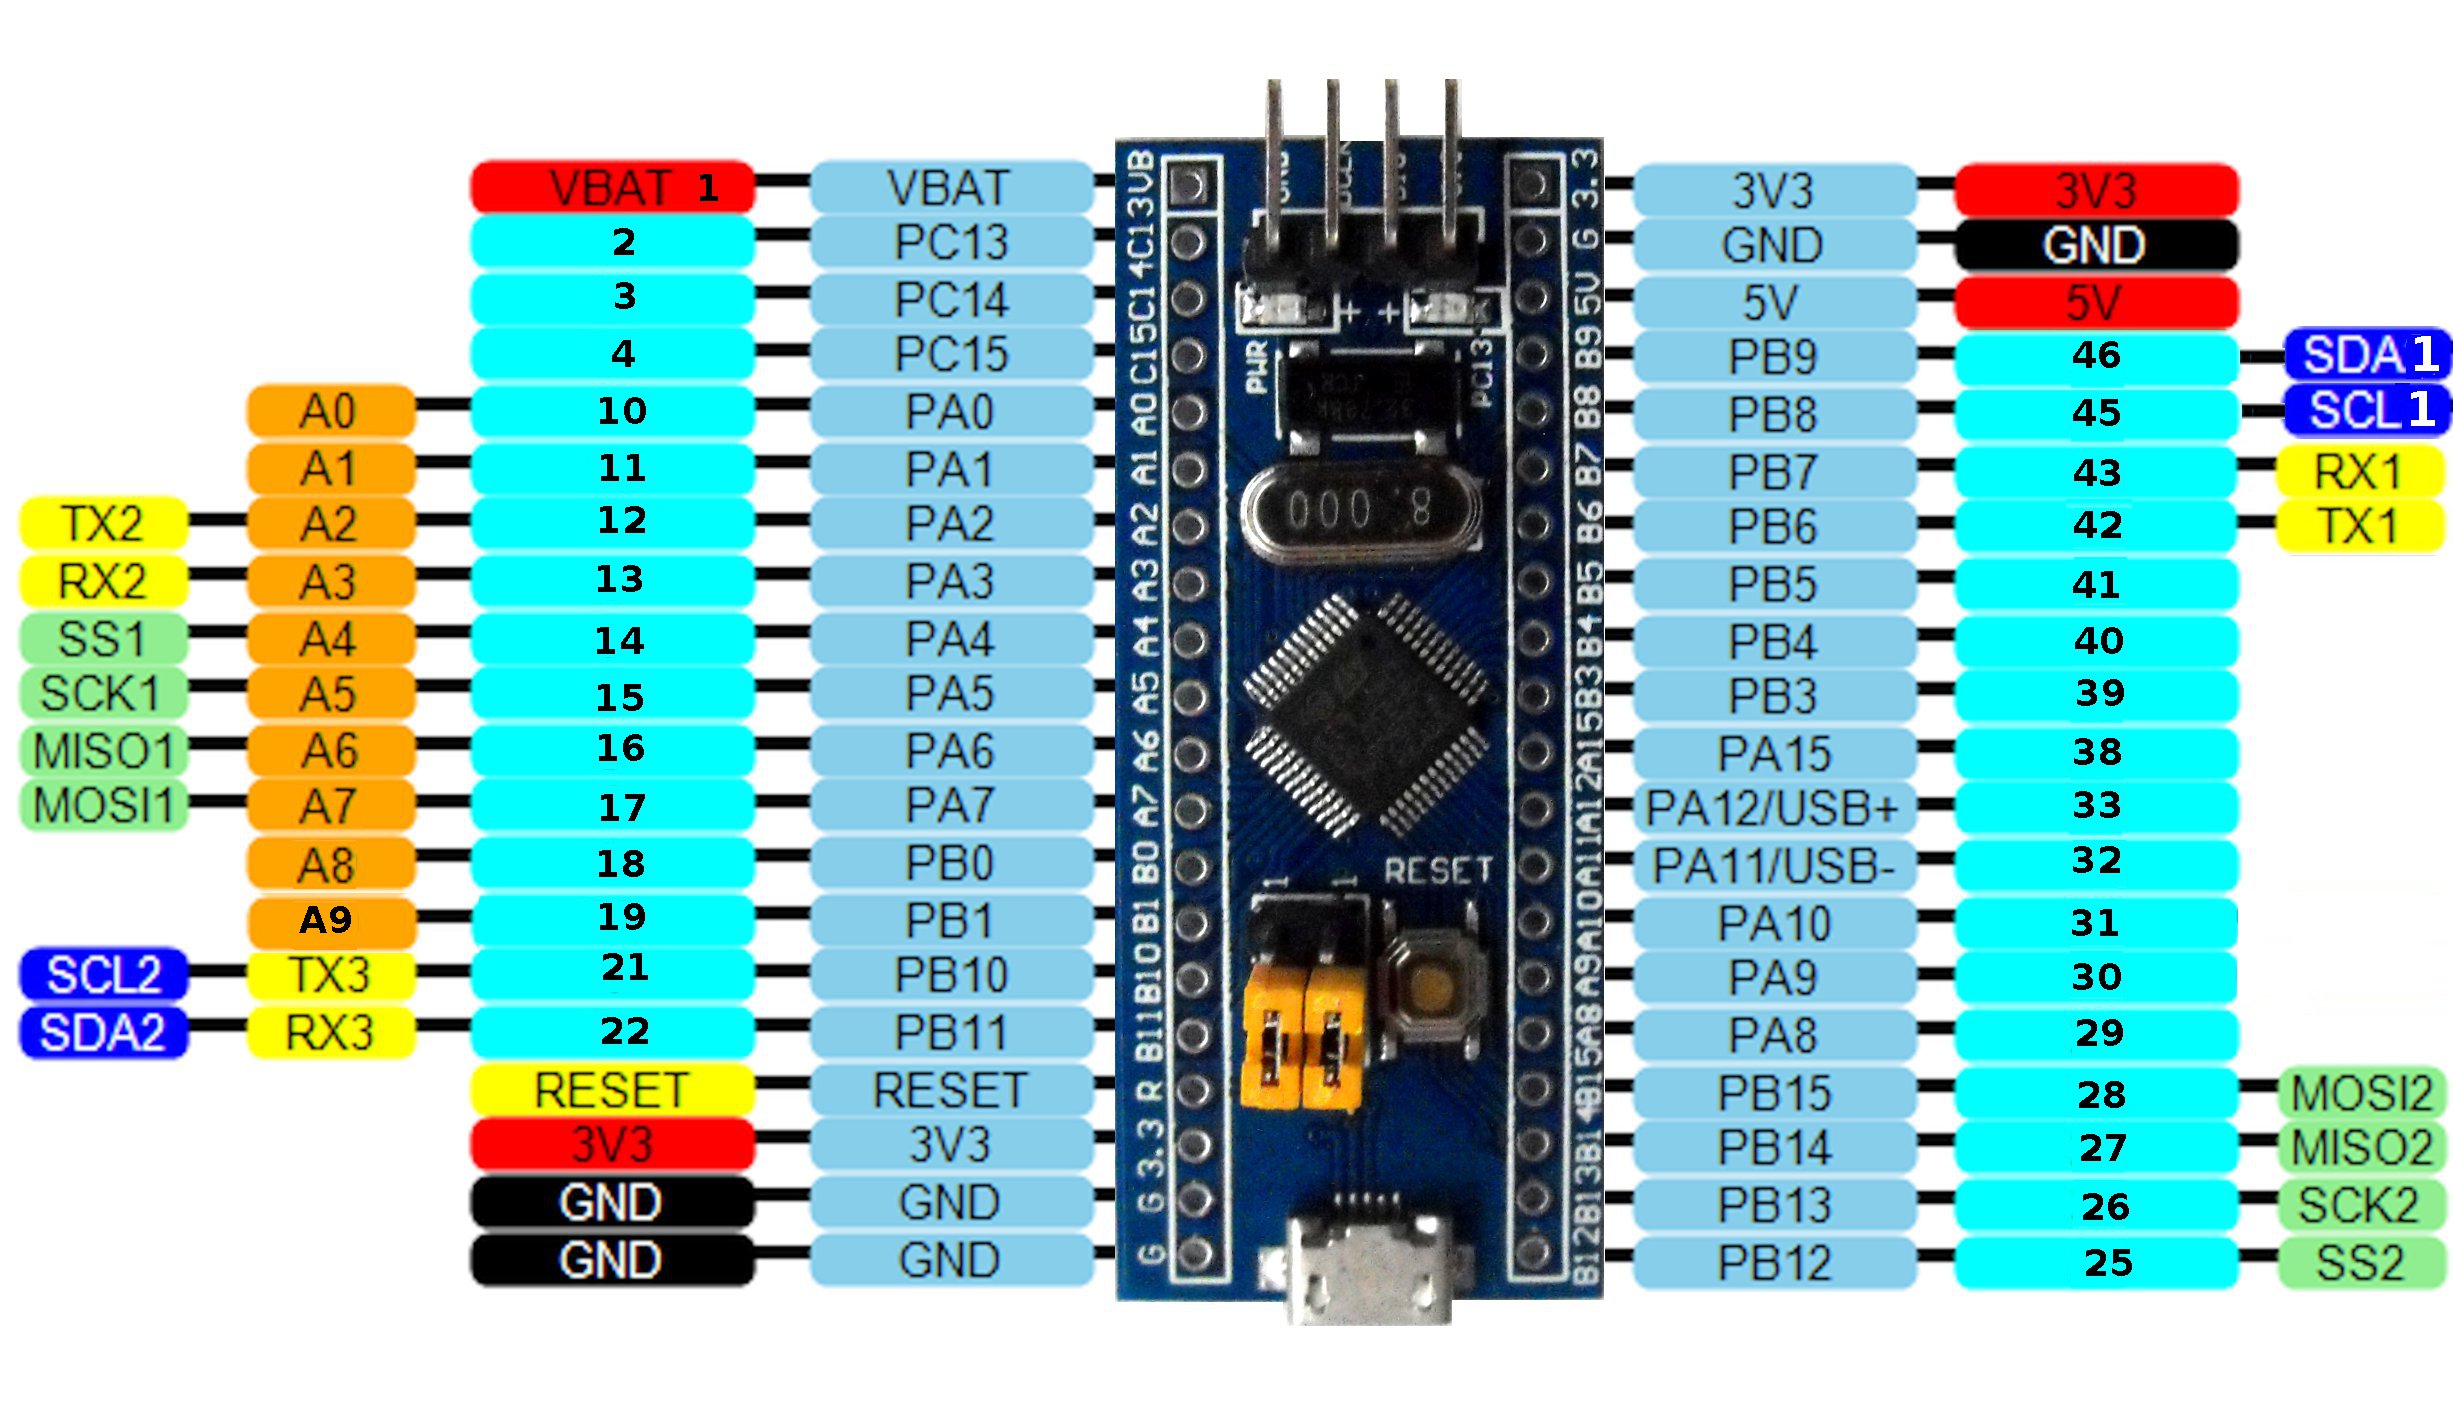 C 6 board. Stm32f103c8t6 RX TX. Stm32f103c8t6 Board pinout. Stm32 stm32f103c8t6 - -. Stm32f103c8t6 USB Port.